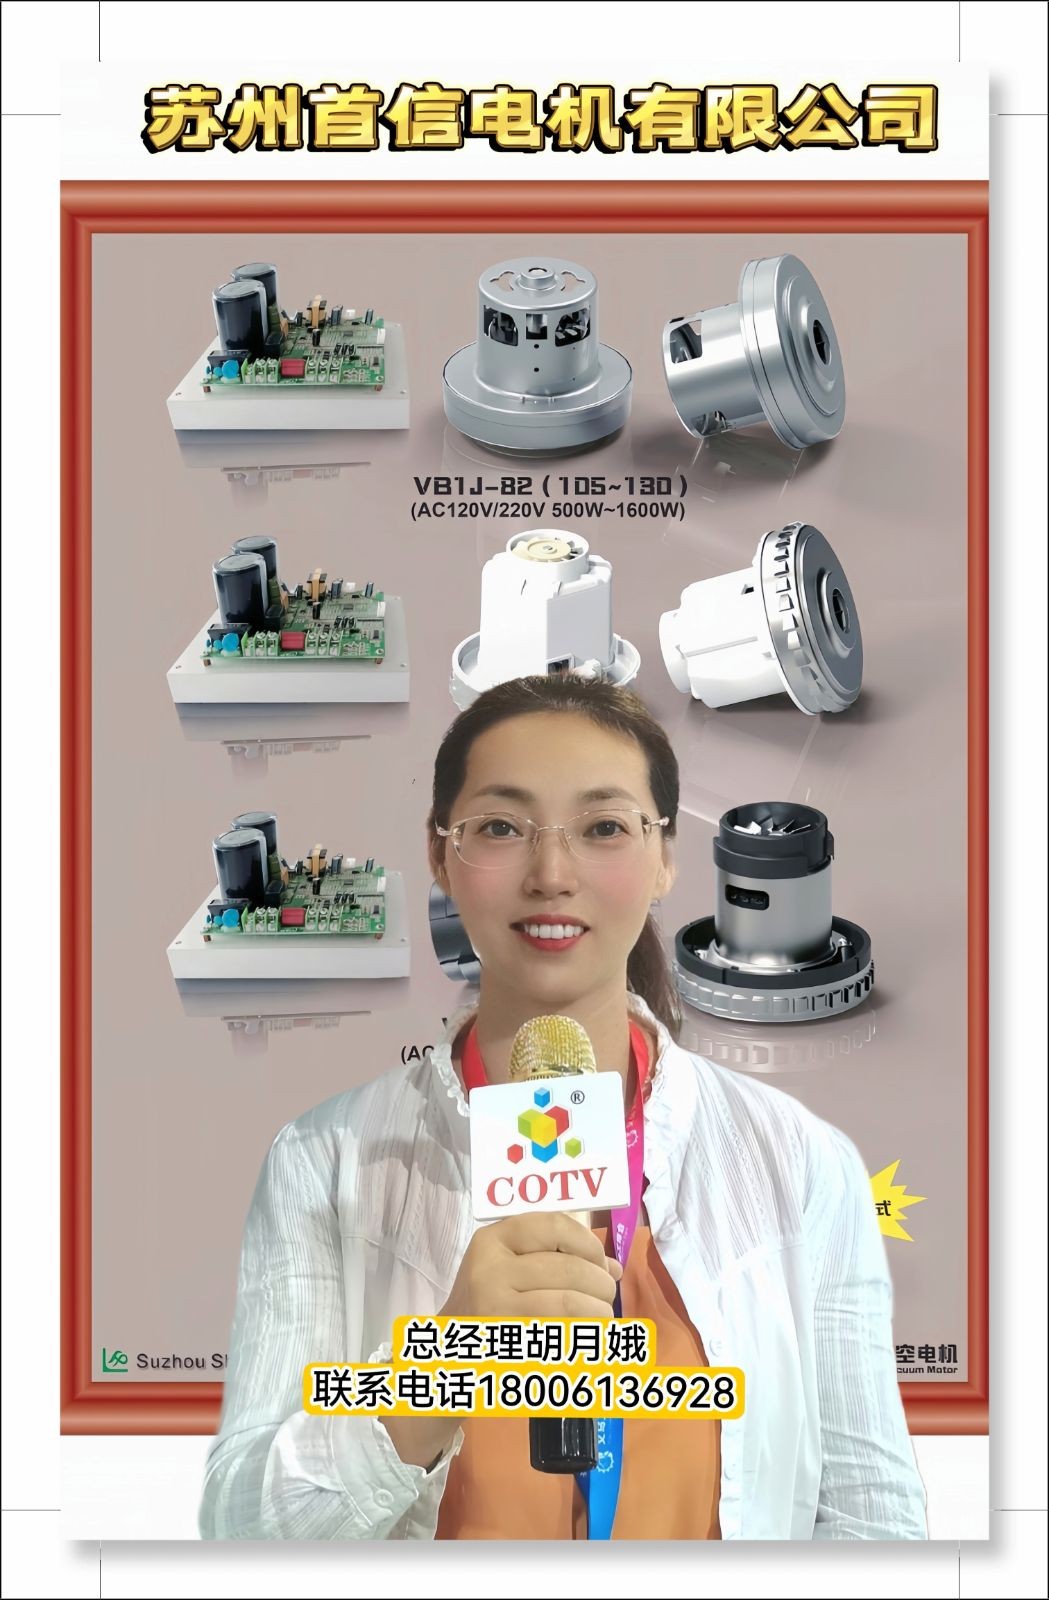 COTV全球直播-苏州首信电机有限公司专业生产 各种交流电机，直流和高低压电机，交直流无刷风机电机等产品，欢迎大家光临！